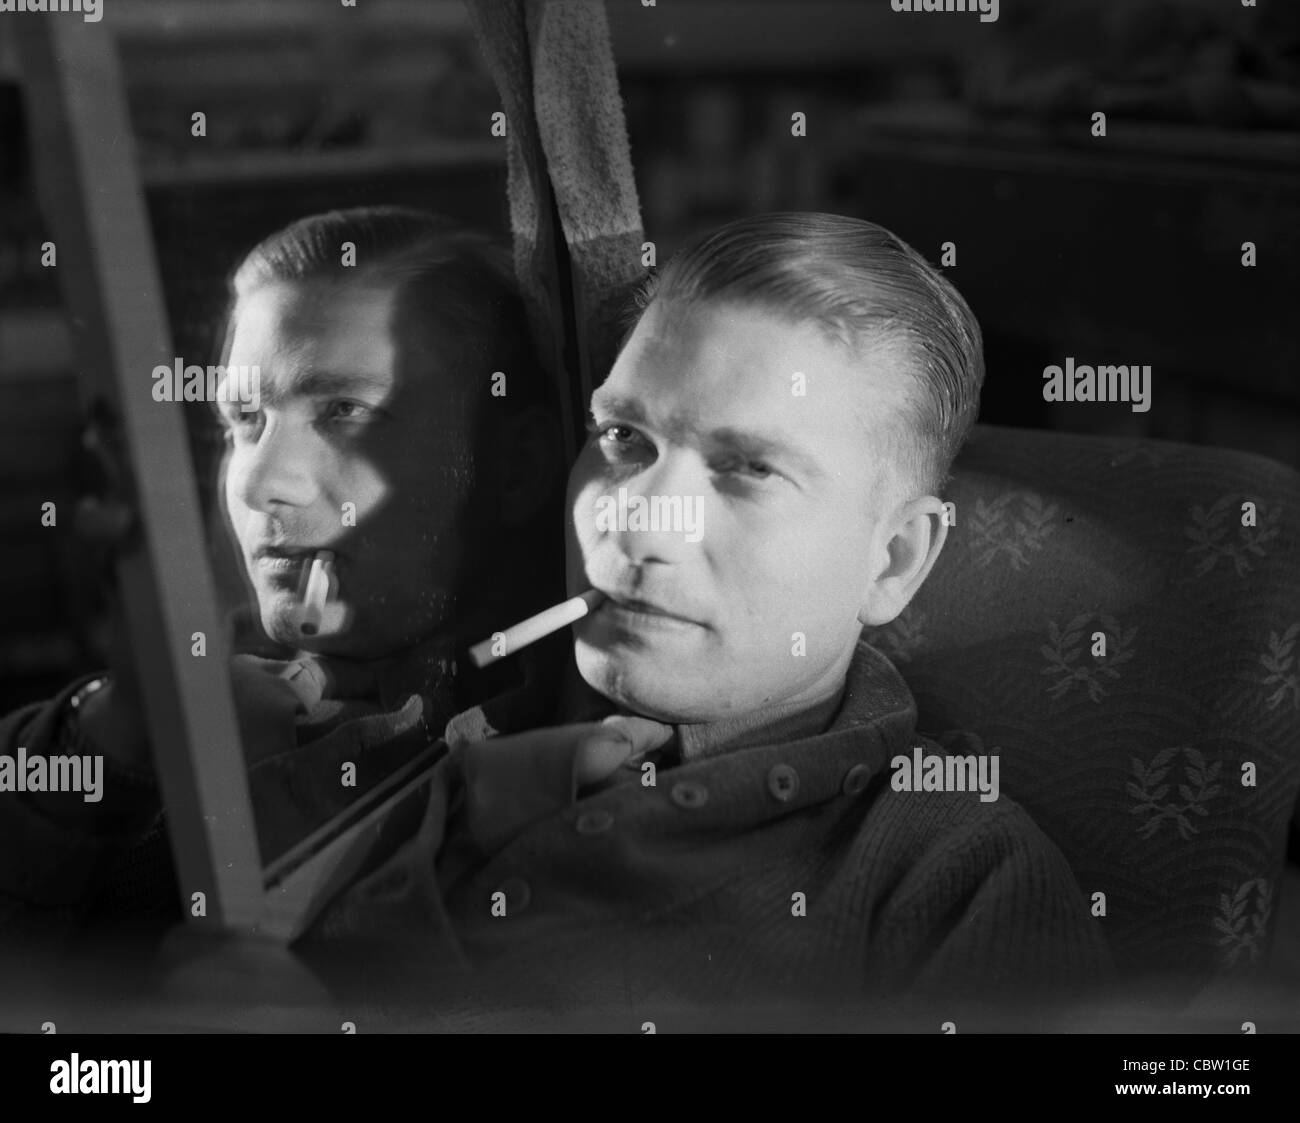 Europa und England während des zweiten Weltkriegs. Debonair amerikanischen GI qualmender Zigarette in Spiegel reflektiert. 1940er Jahre Film Noir Beleuchtung Stockfoto